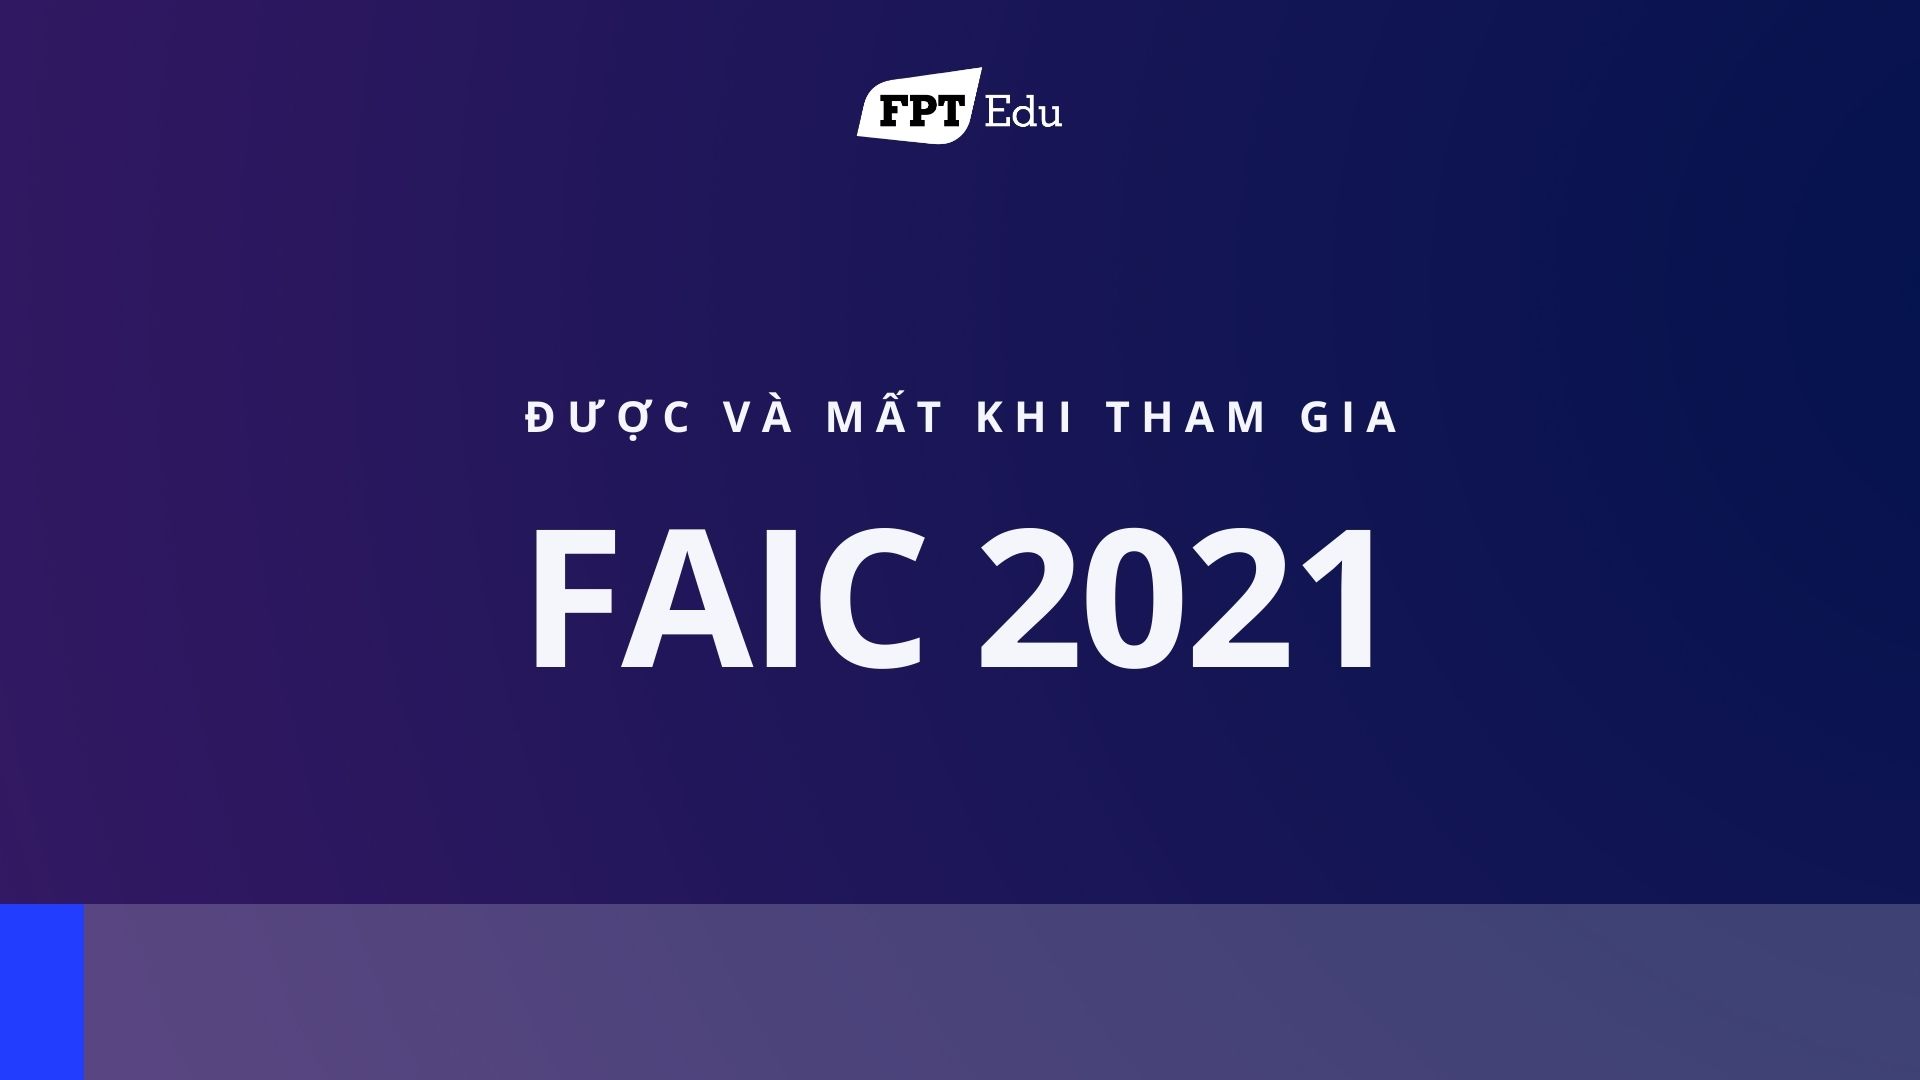 “2 mất, 3 được” khi tham gia FAIC 2021